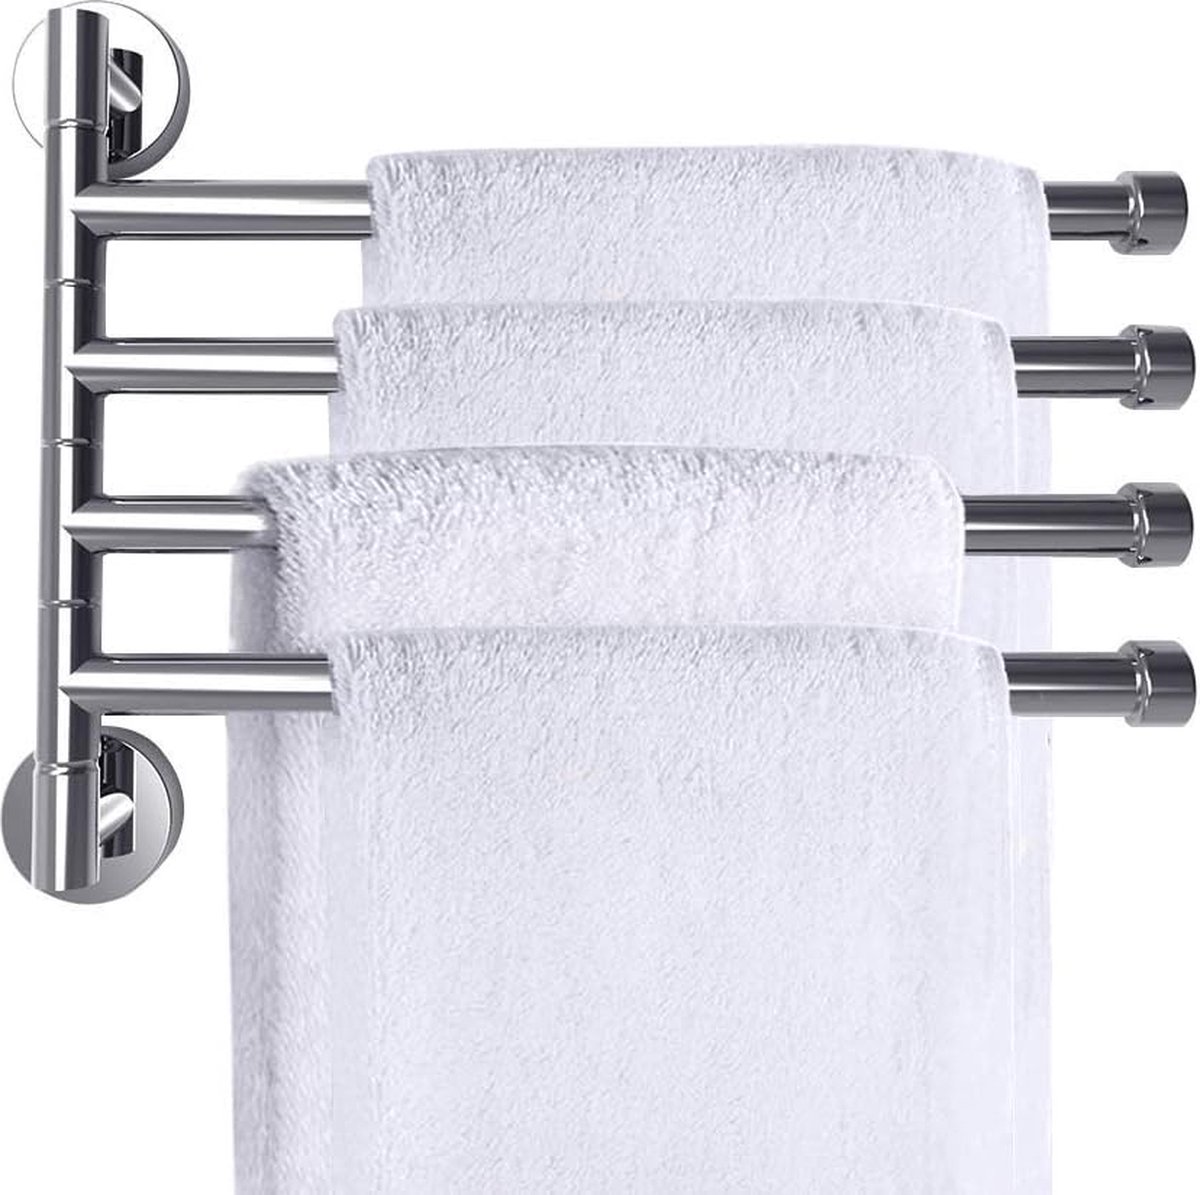 Handdoekhouder met 4 zwenkarmen 180° roestvrij staal handdoekstangen badkamer handdoekhaak chroom, draaibaar